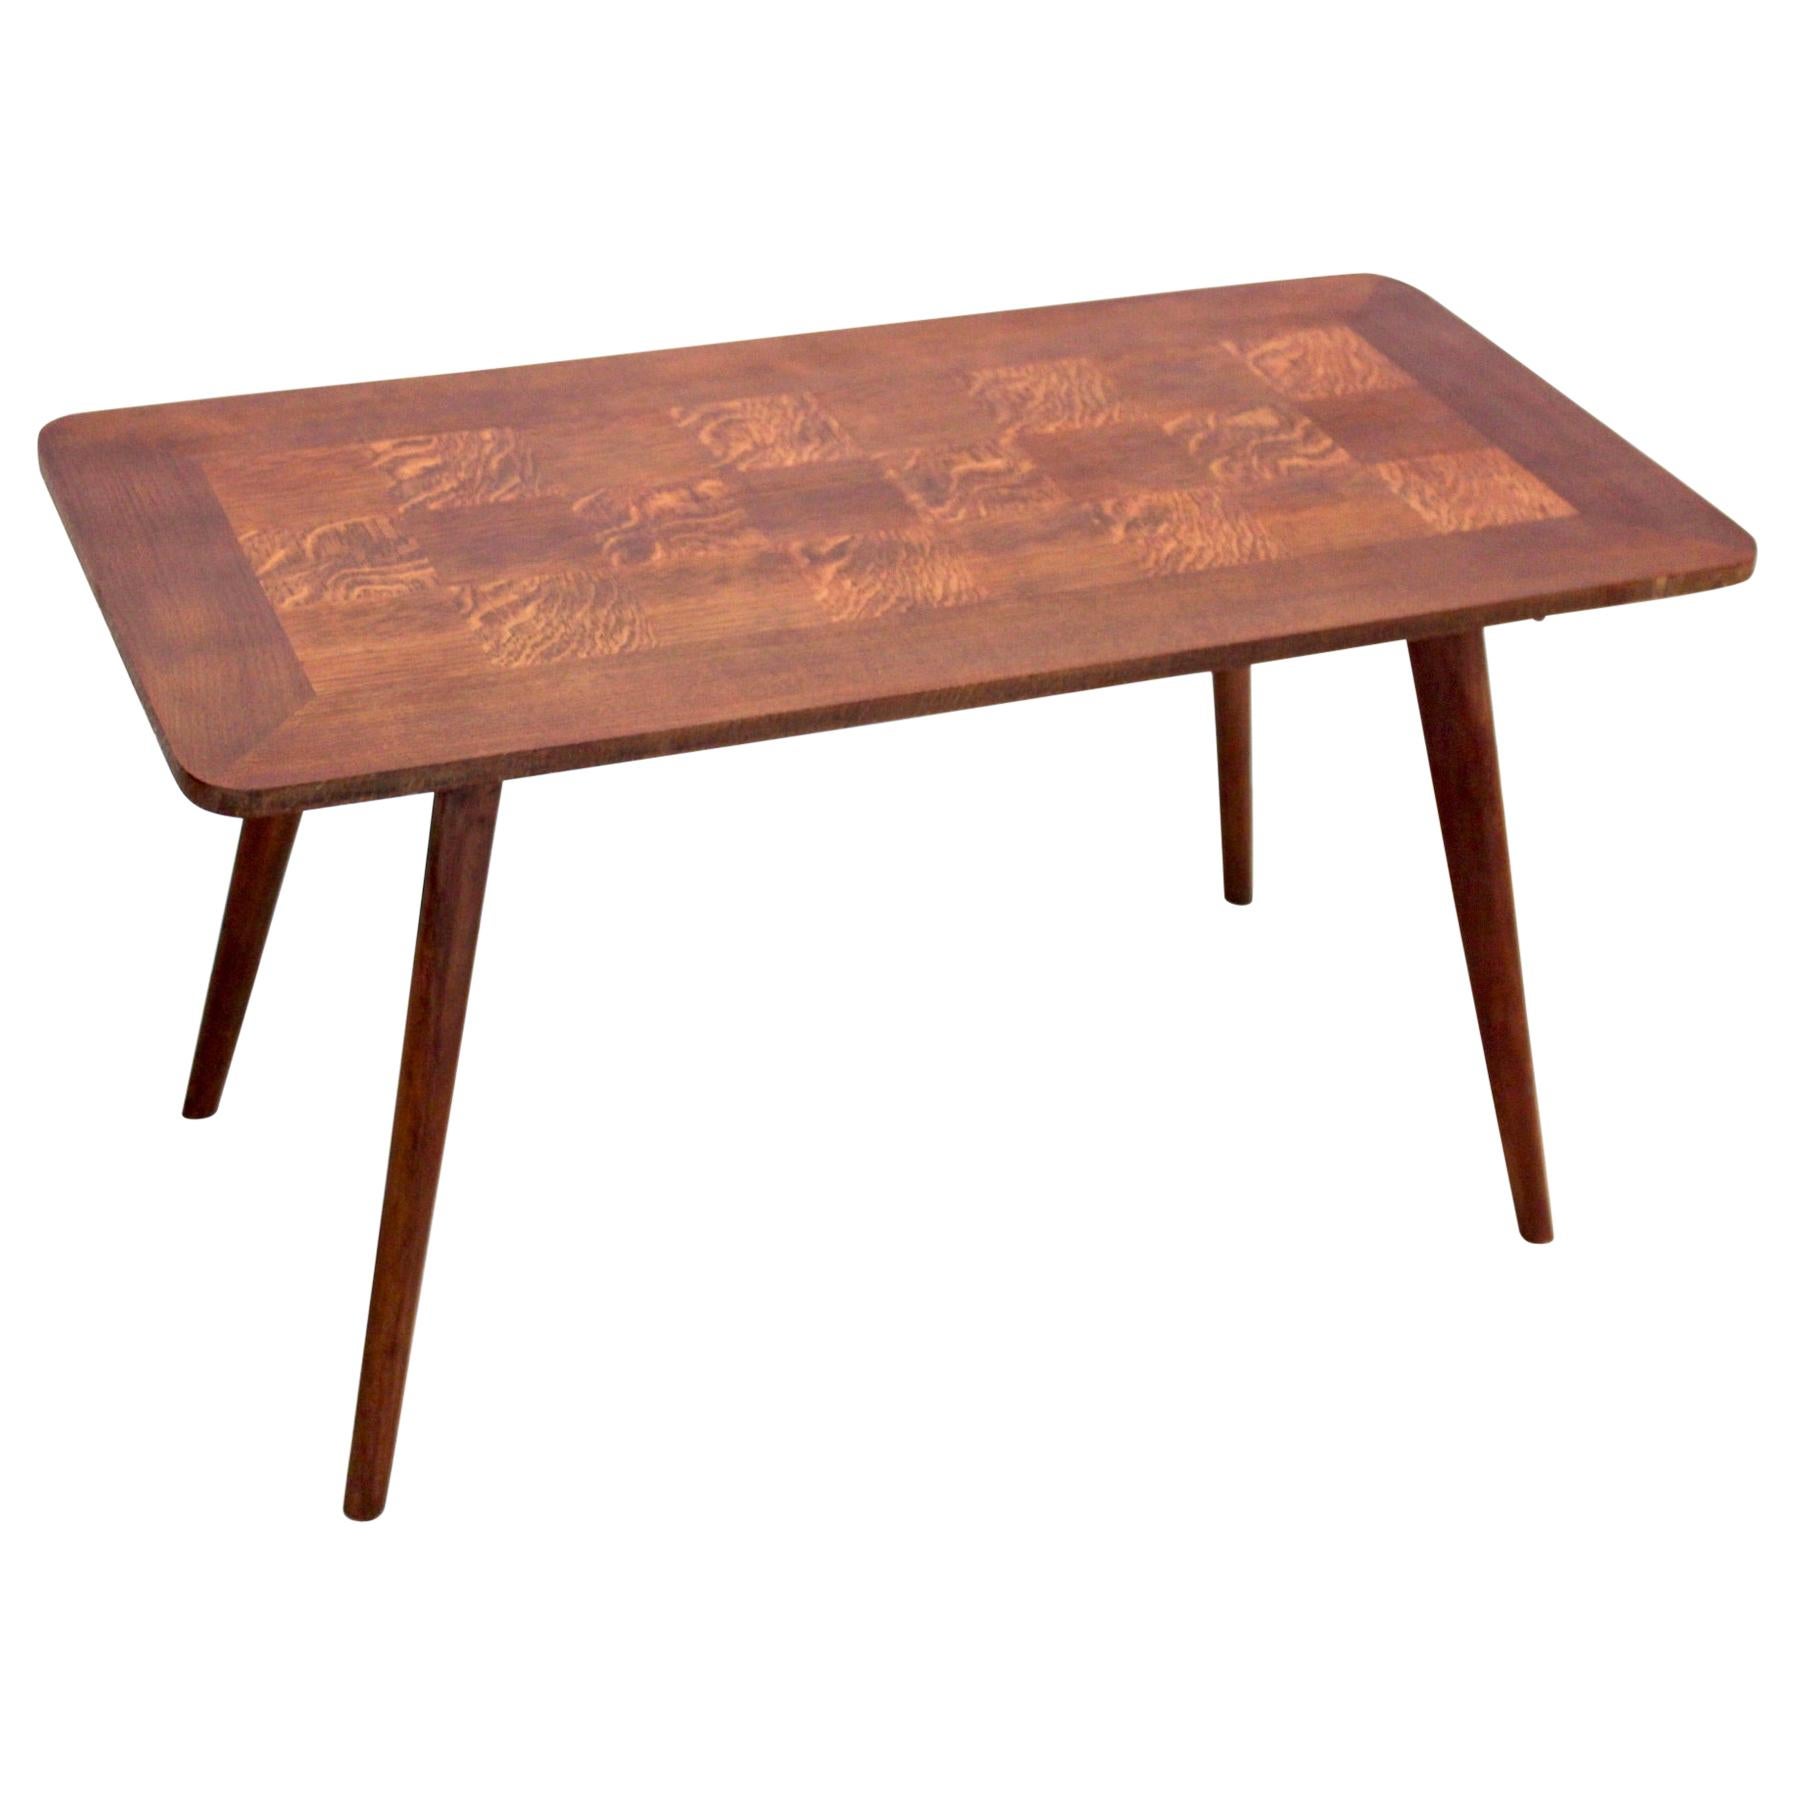 Table basse en bois de chêne avec incrustation de placage, années 1950